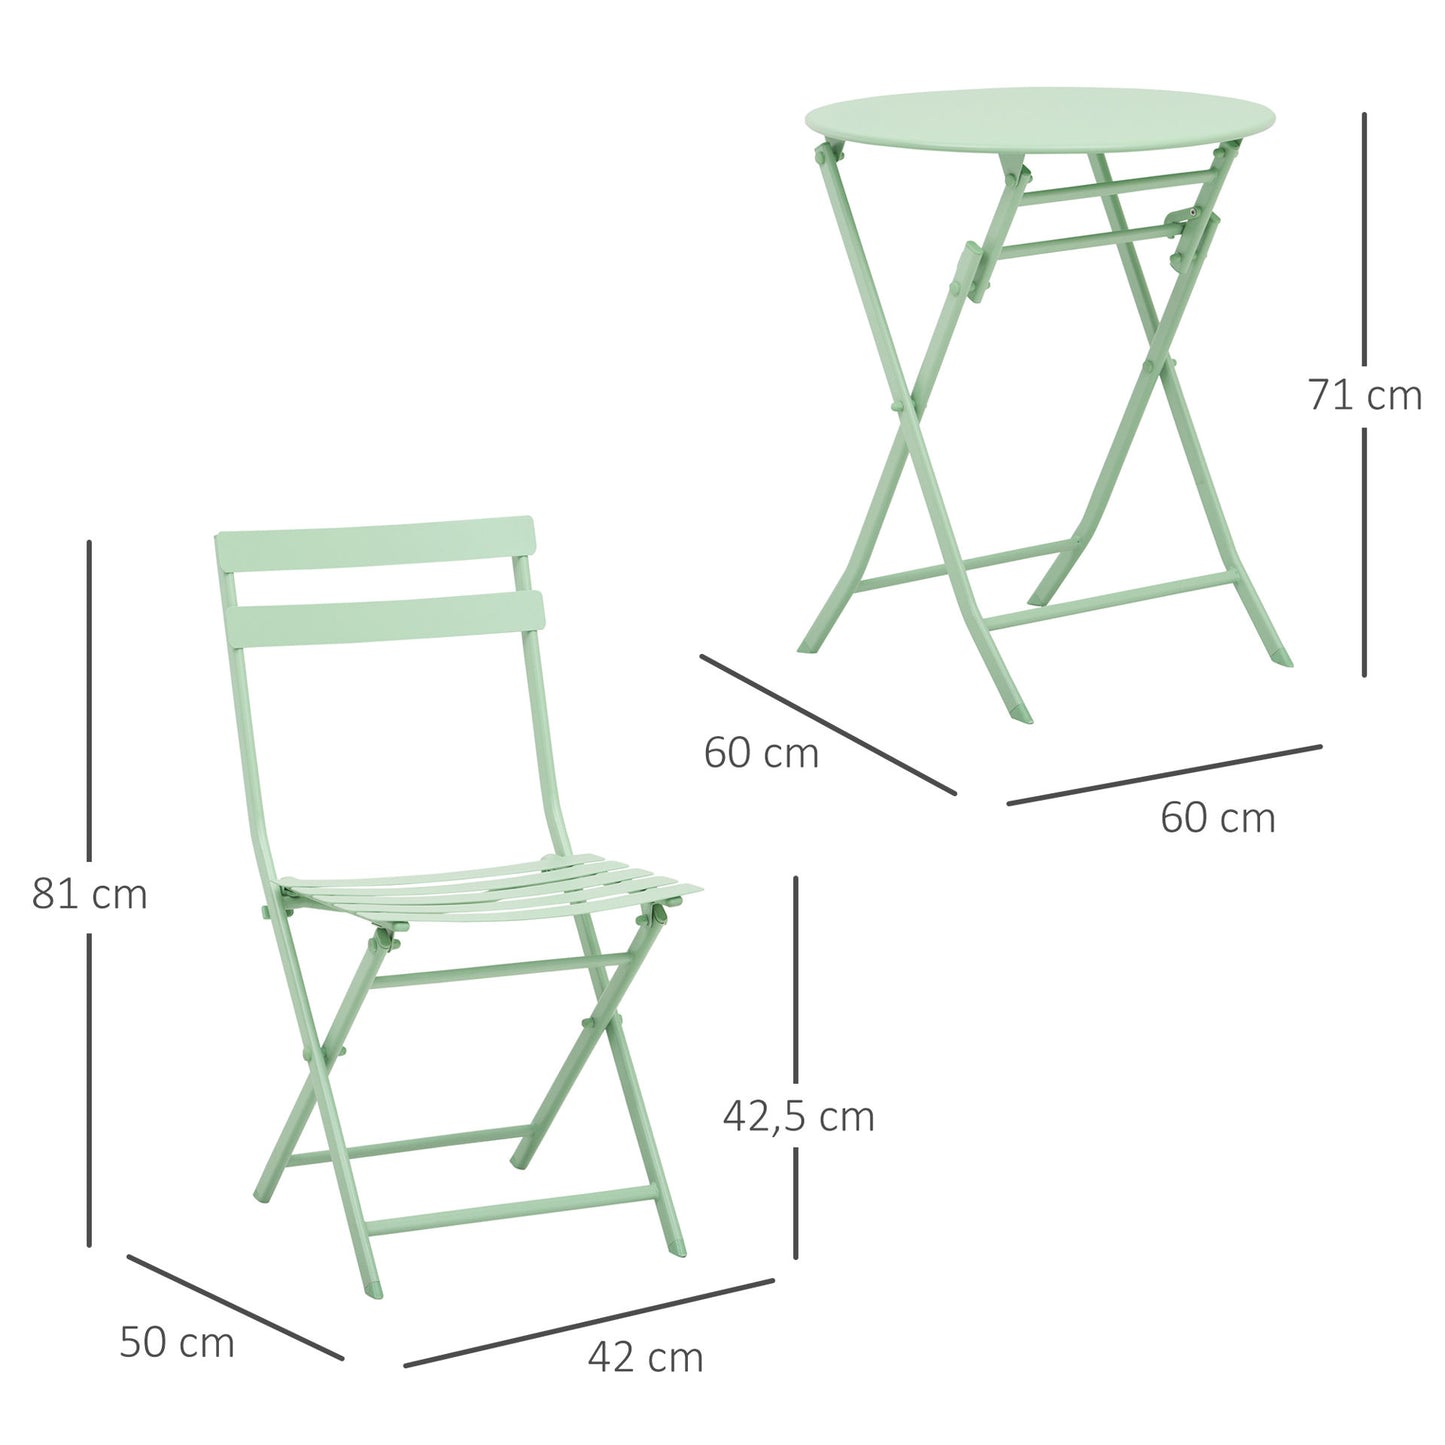 Nancy's Bremen Tuinset voor 2 personen balkonmeubelset bistrotafel met 2 stoelen voor tuin inklapbaar groen